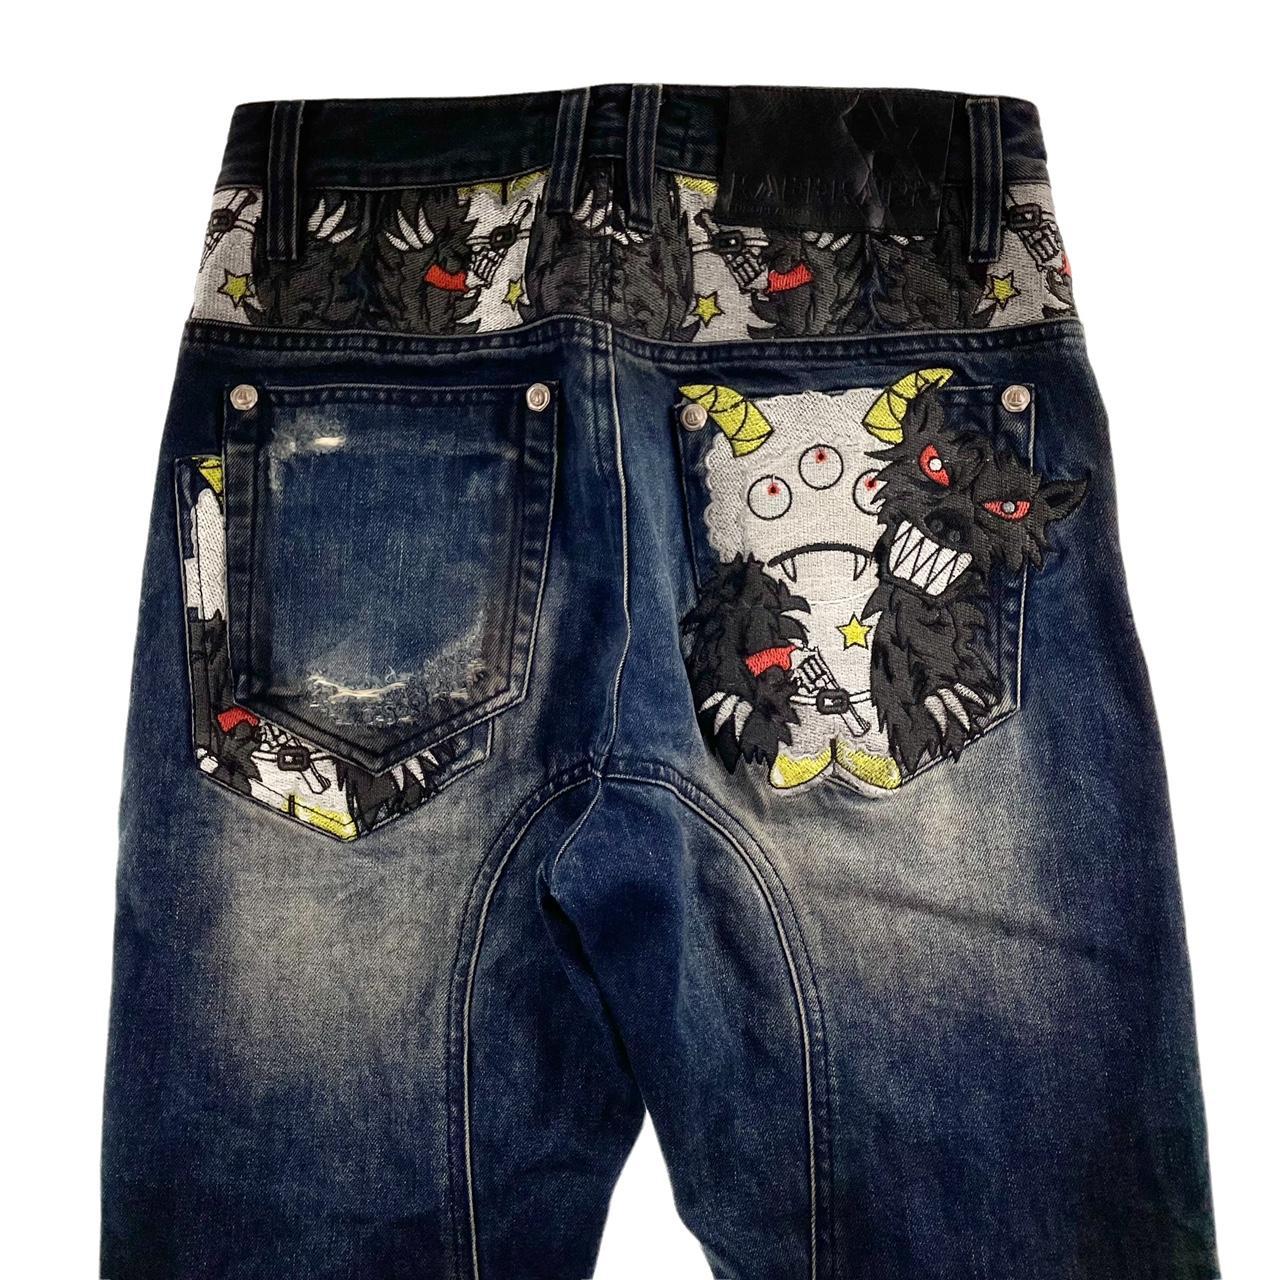 Vintage Monster and buttons Japanese denim jeans... - Depop